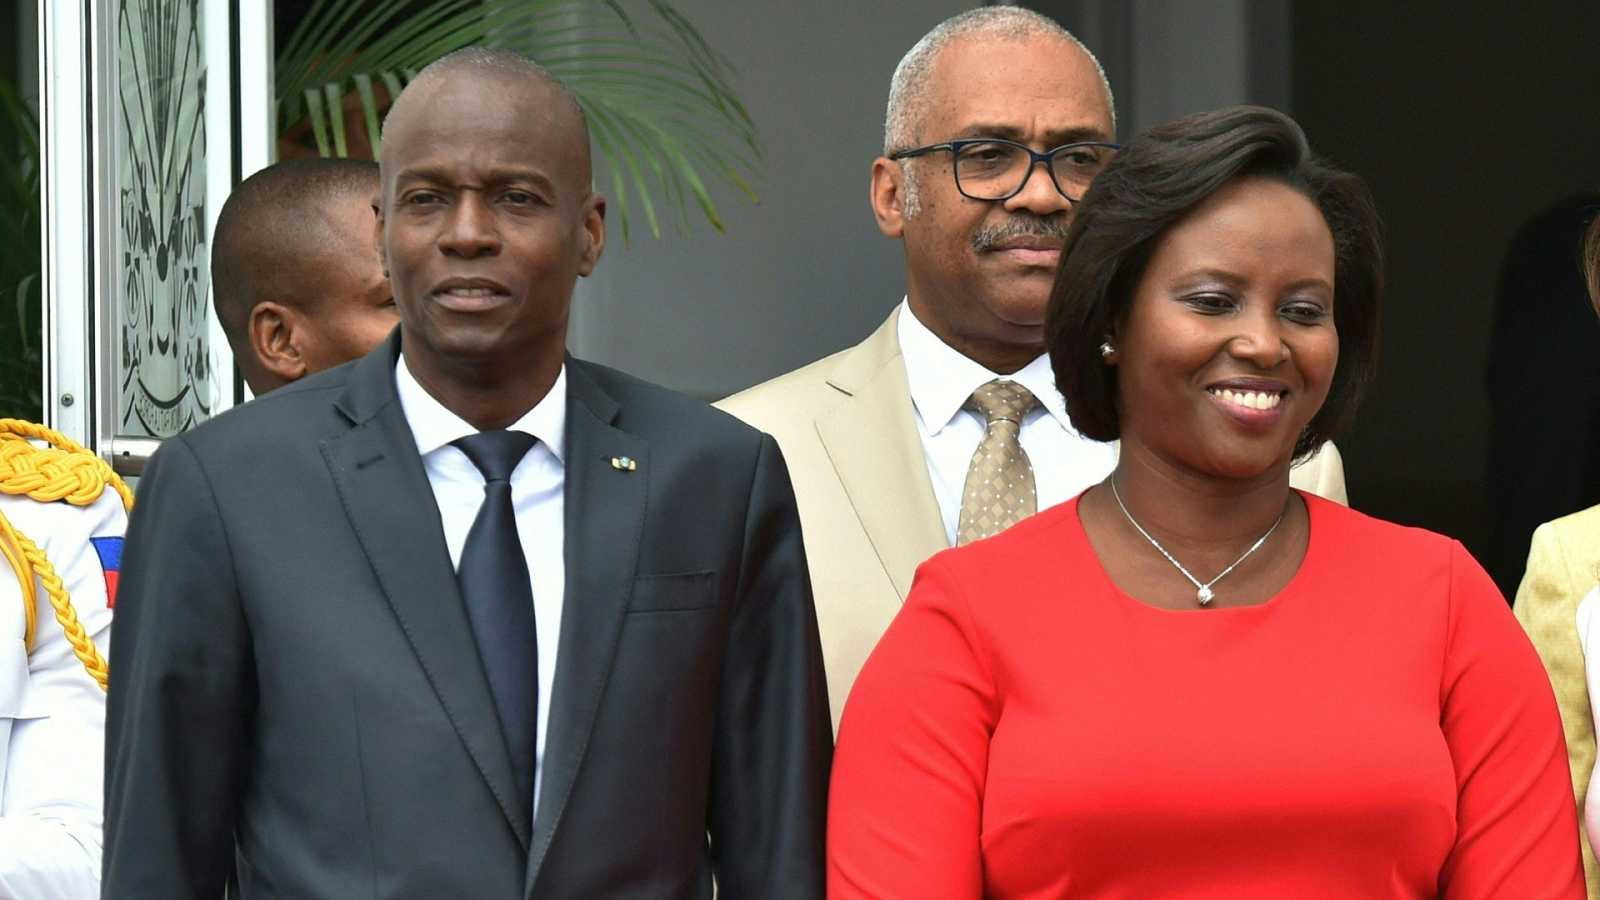 Imputación de la viuda del presidente de Haití